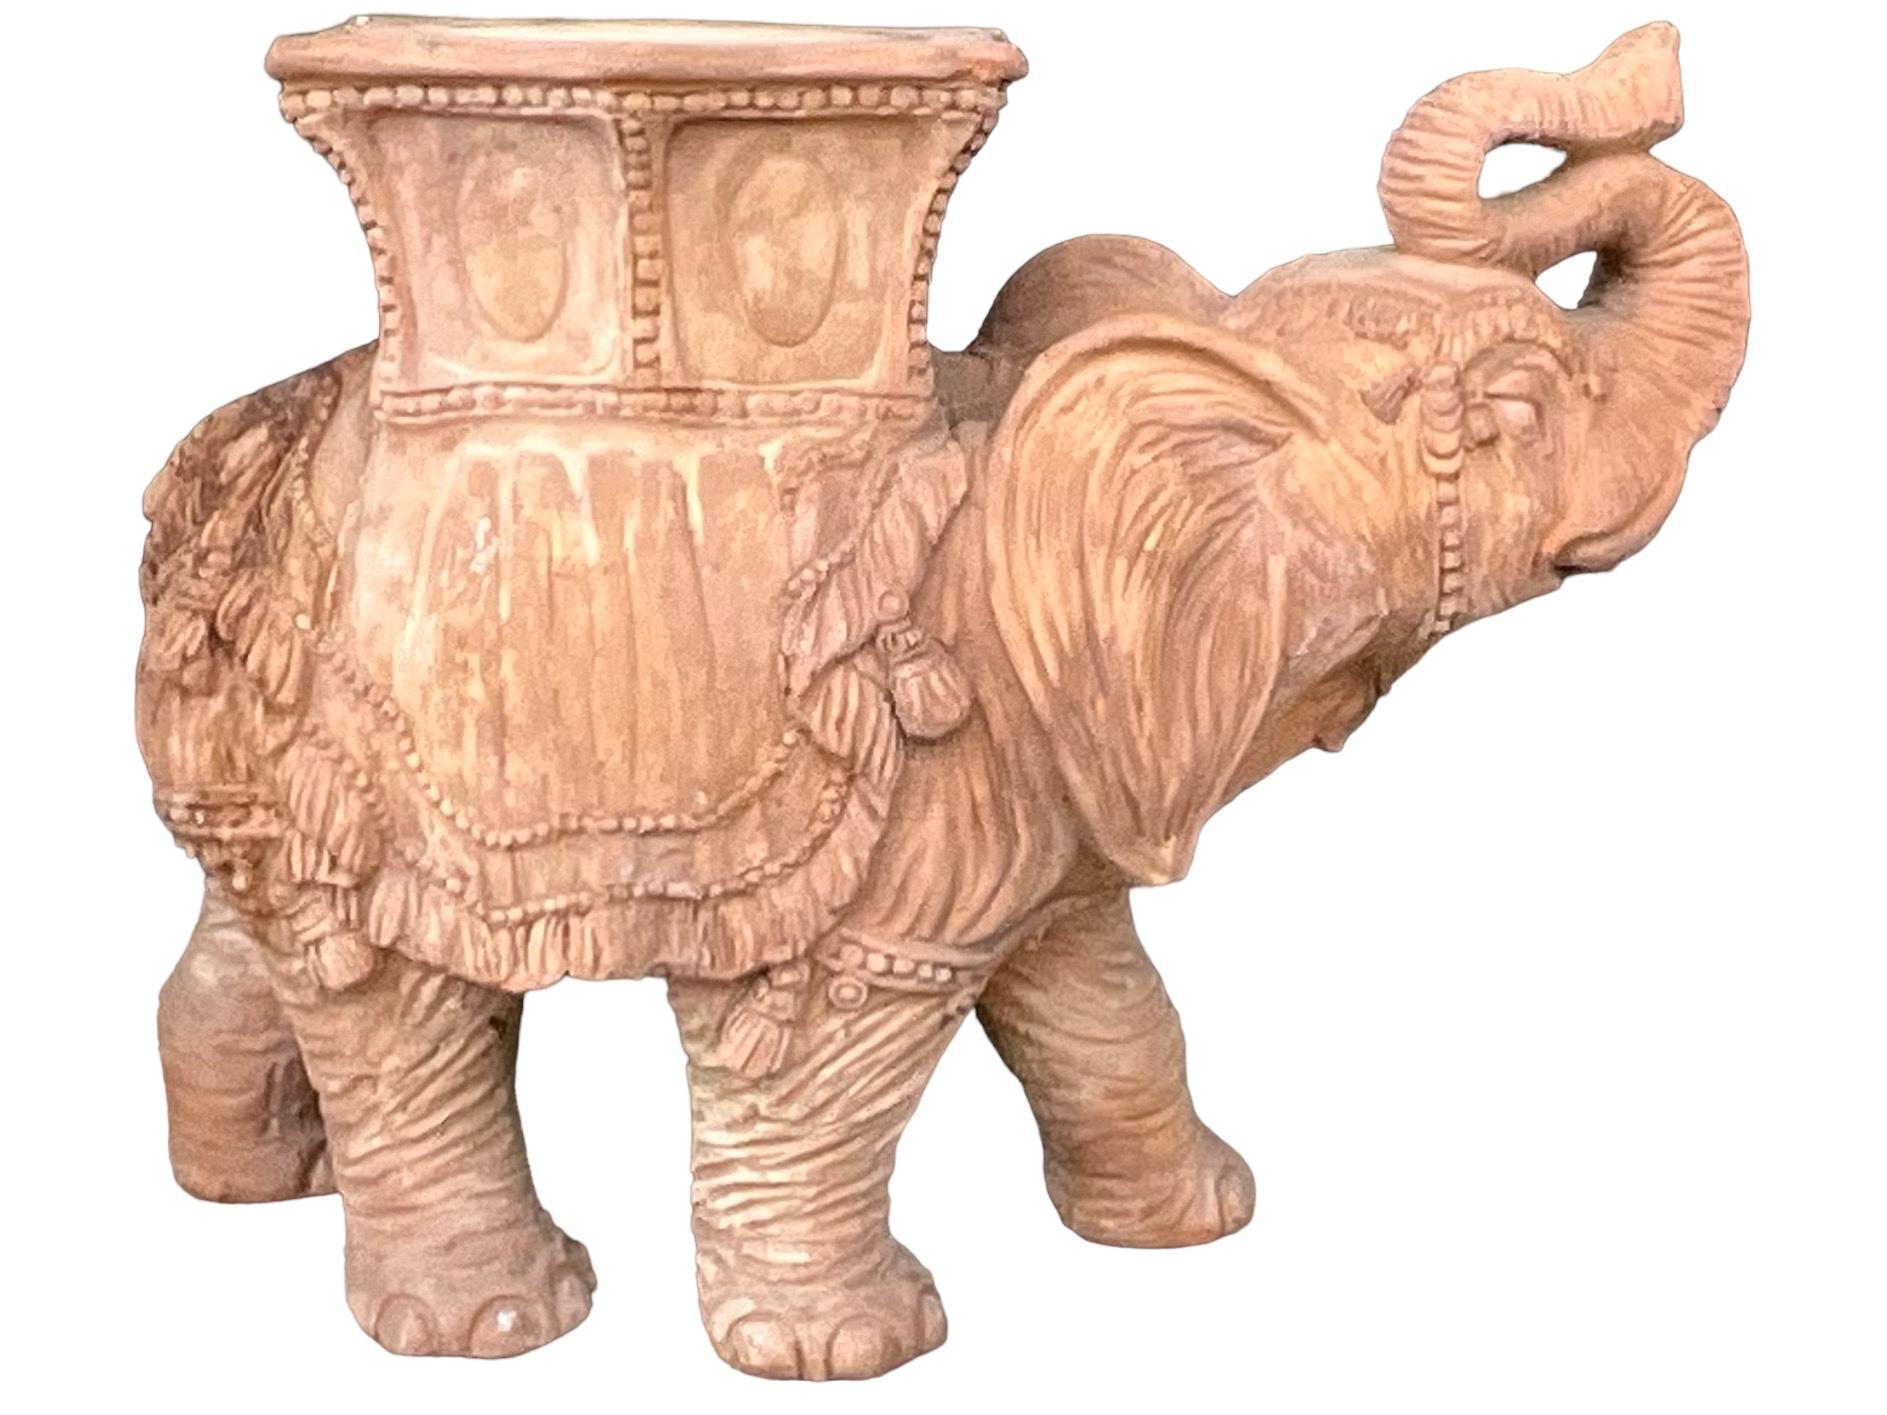 Il s'agit d'un éléphant en terre cuite pour siège de jardin, de style Hollywood Regency italien. Il présente de très beaux détails et n'est pas marqué. Il présente quelques traces d'usure dans le jardin.

Mon expédition est pour les États-Unis